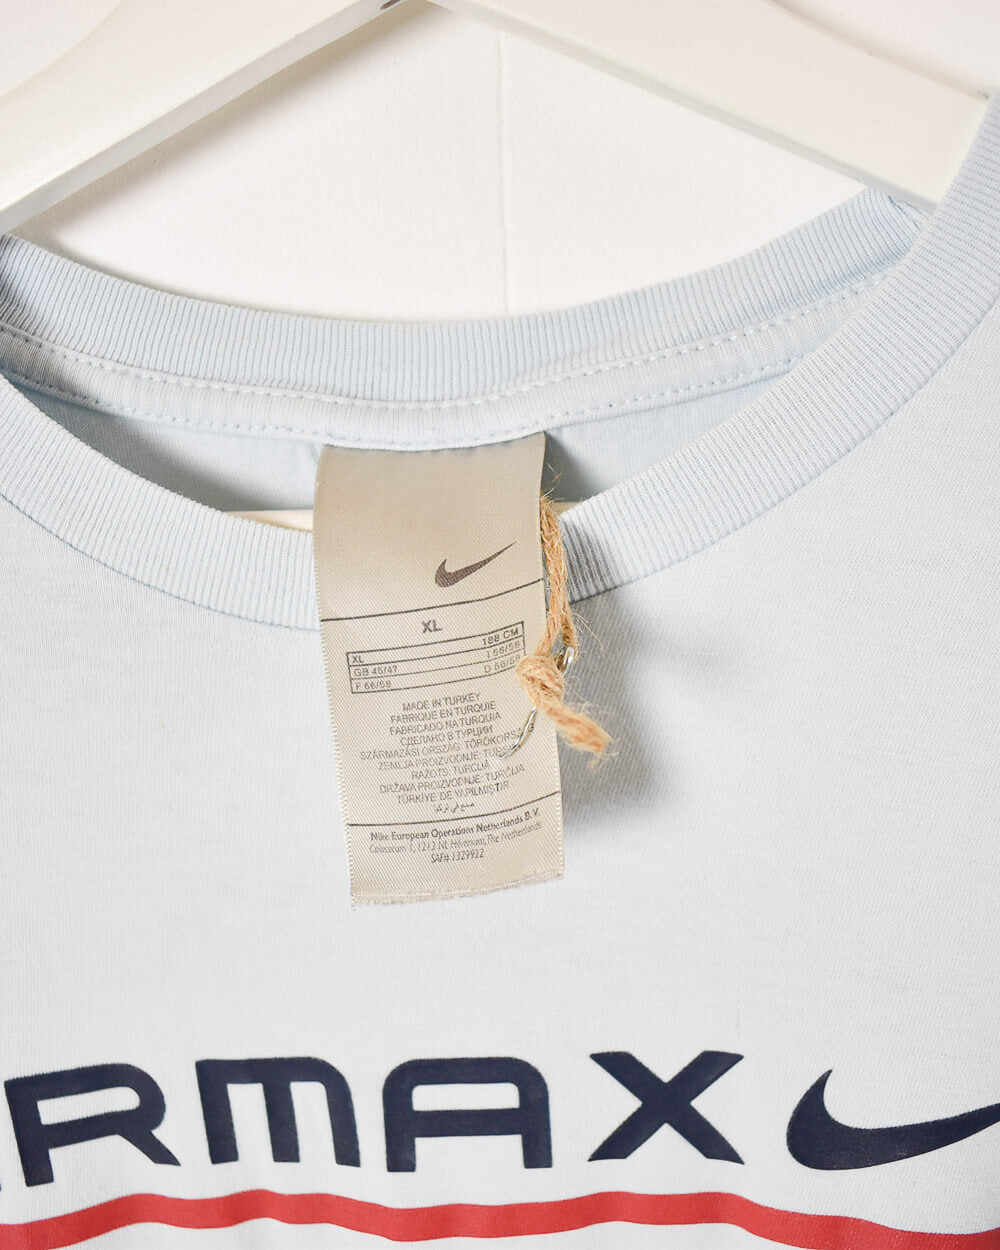 Baby Nike Air Max 87 T-Shirt - X-Large